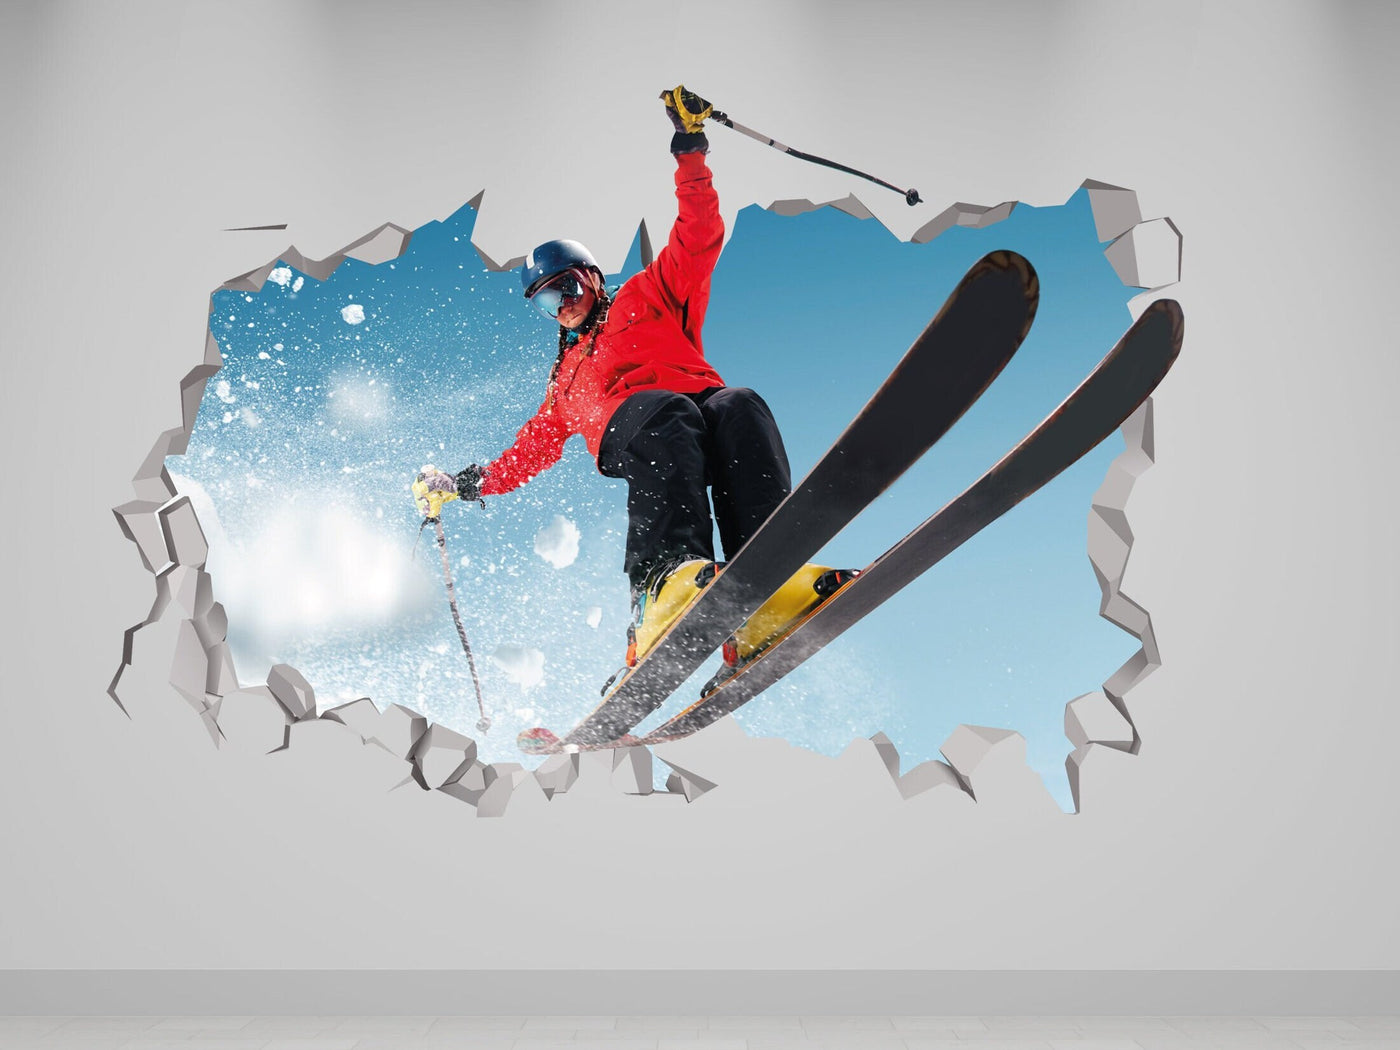 Decalque de parede de esqui - Decalque de esqui - Adesivos de esqui - Decalque de snowboard - Decalque de parede 3D de arte de esqui - Presente de snowboard - Decalque de arte de esqui